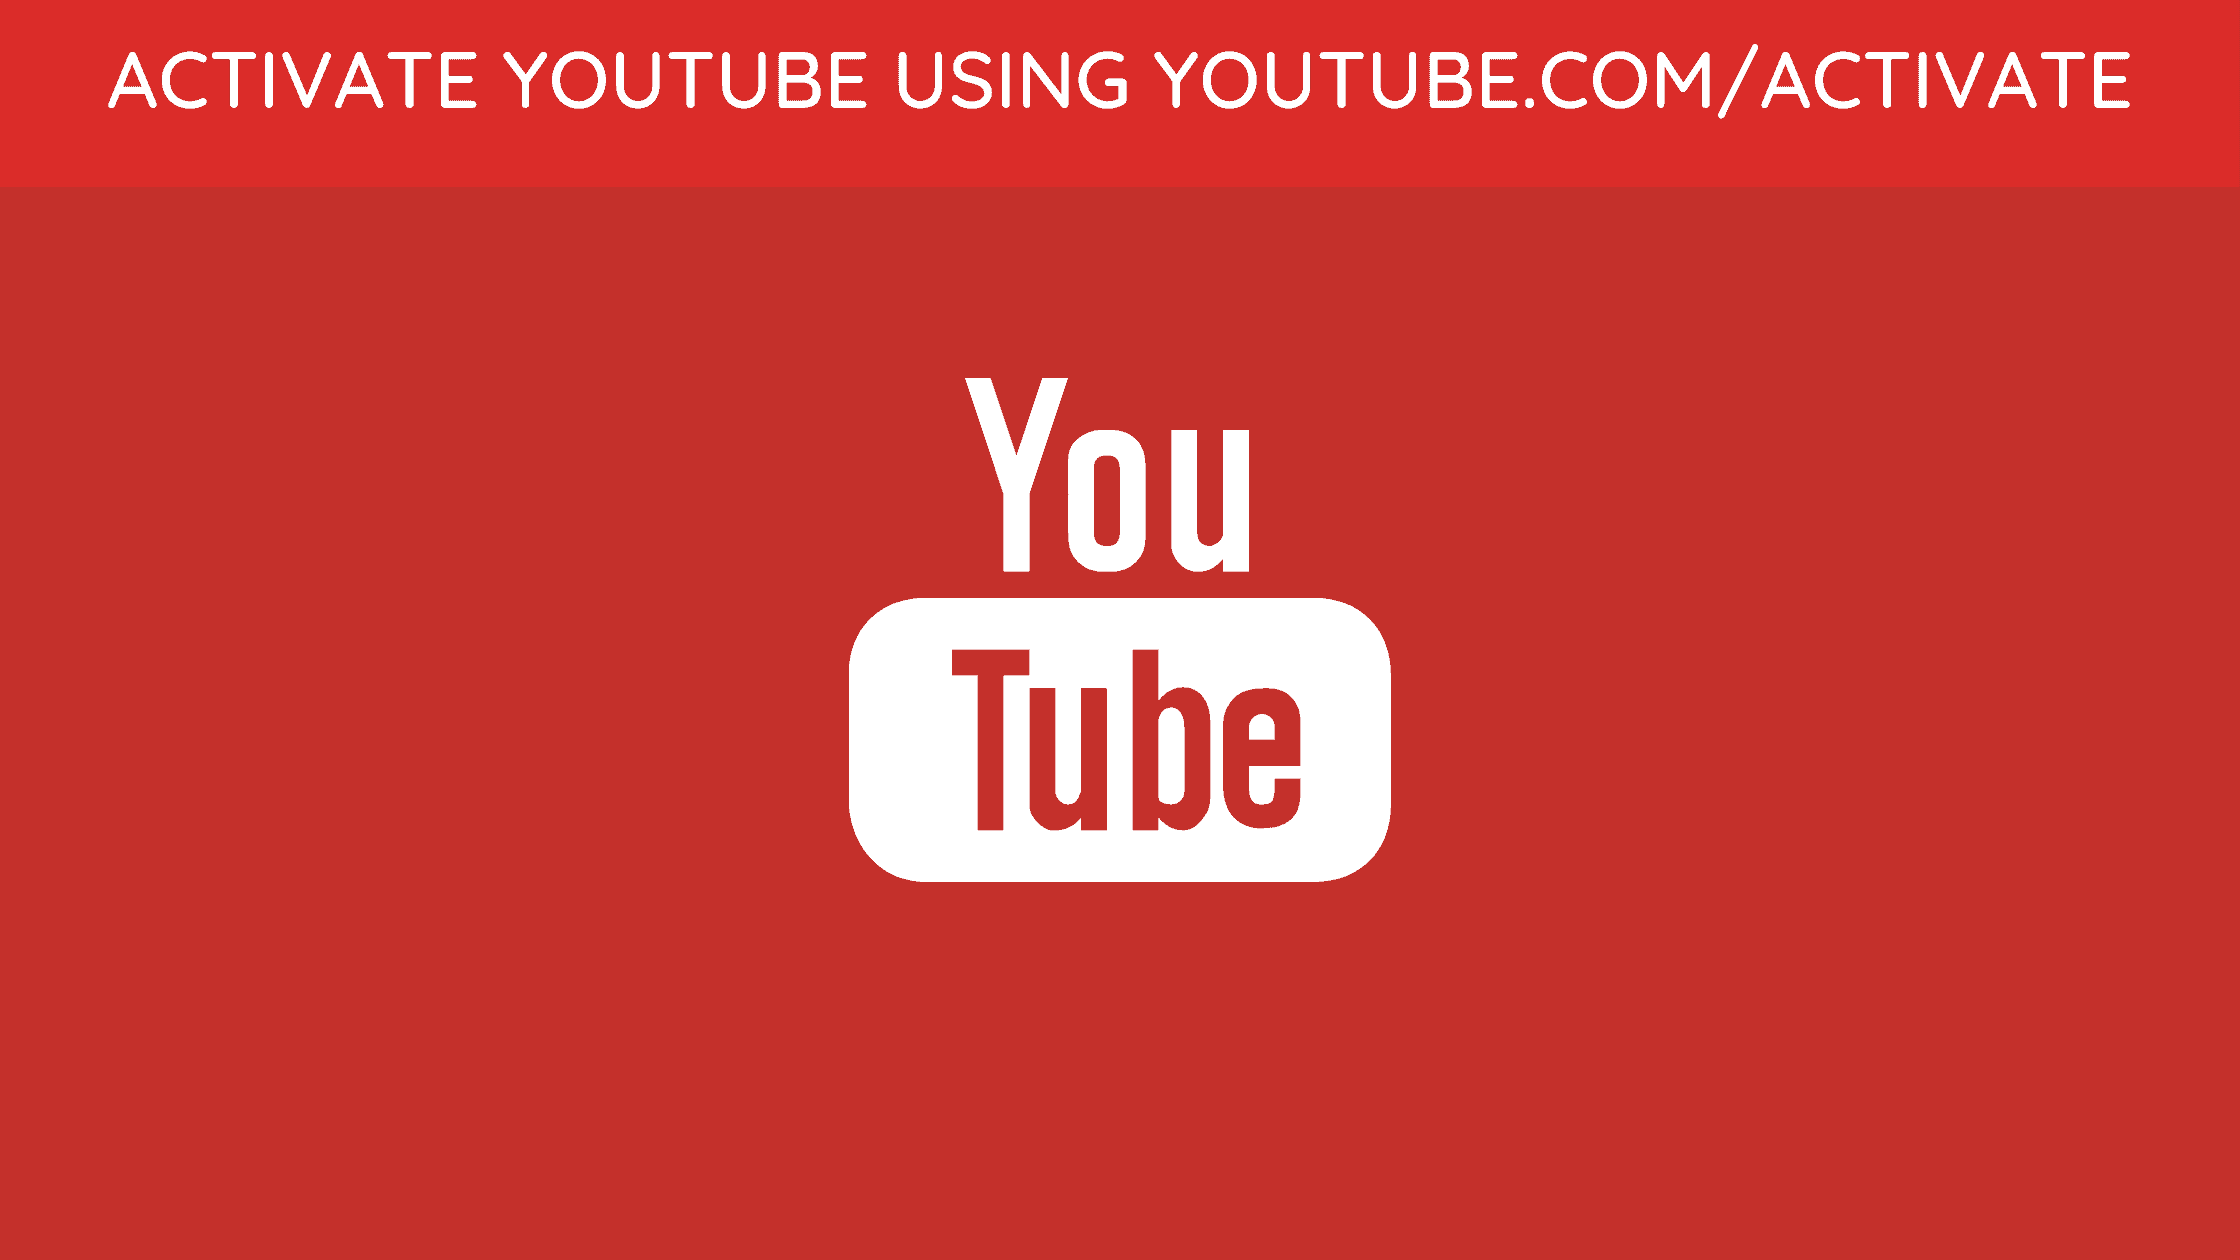 Ютуб активате код. Ютуб активейт. Youtube activate. Ютуб.com activate. Youtube.com/activate youtube.com/activate.